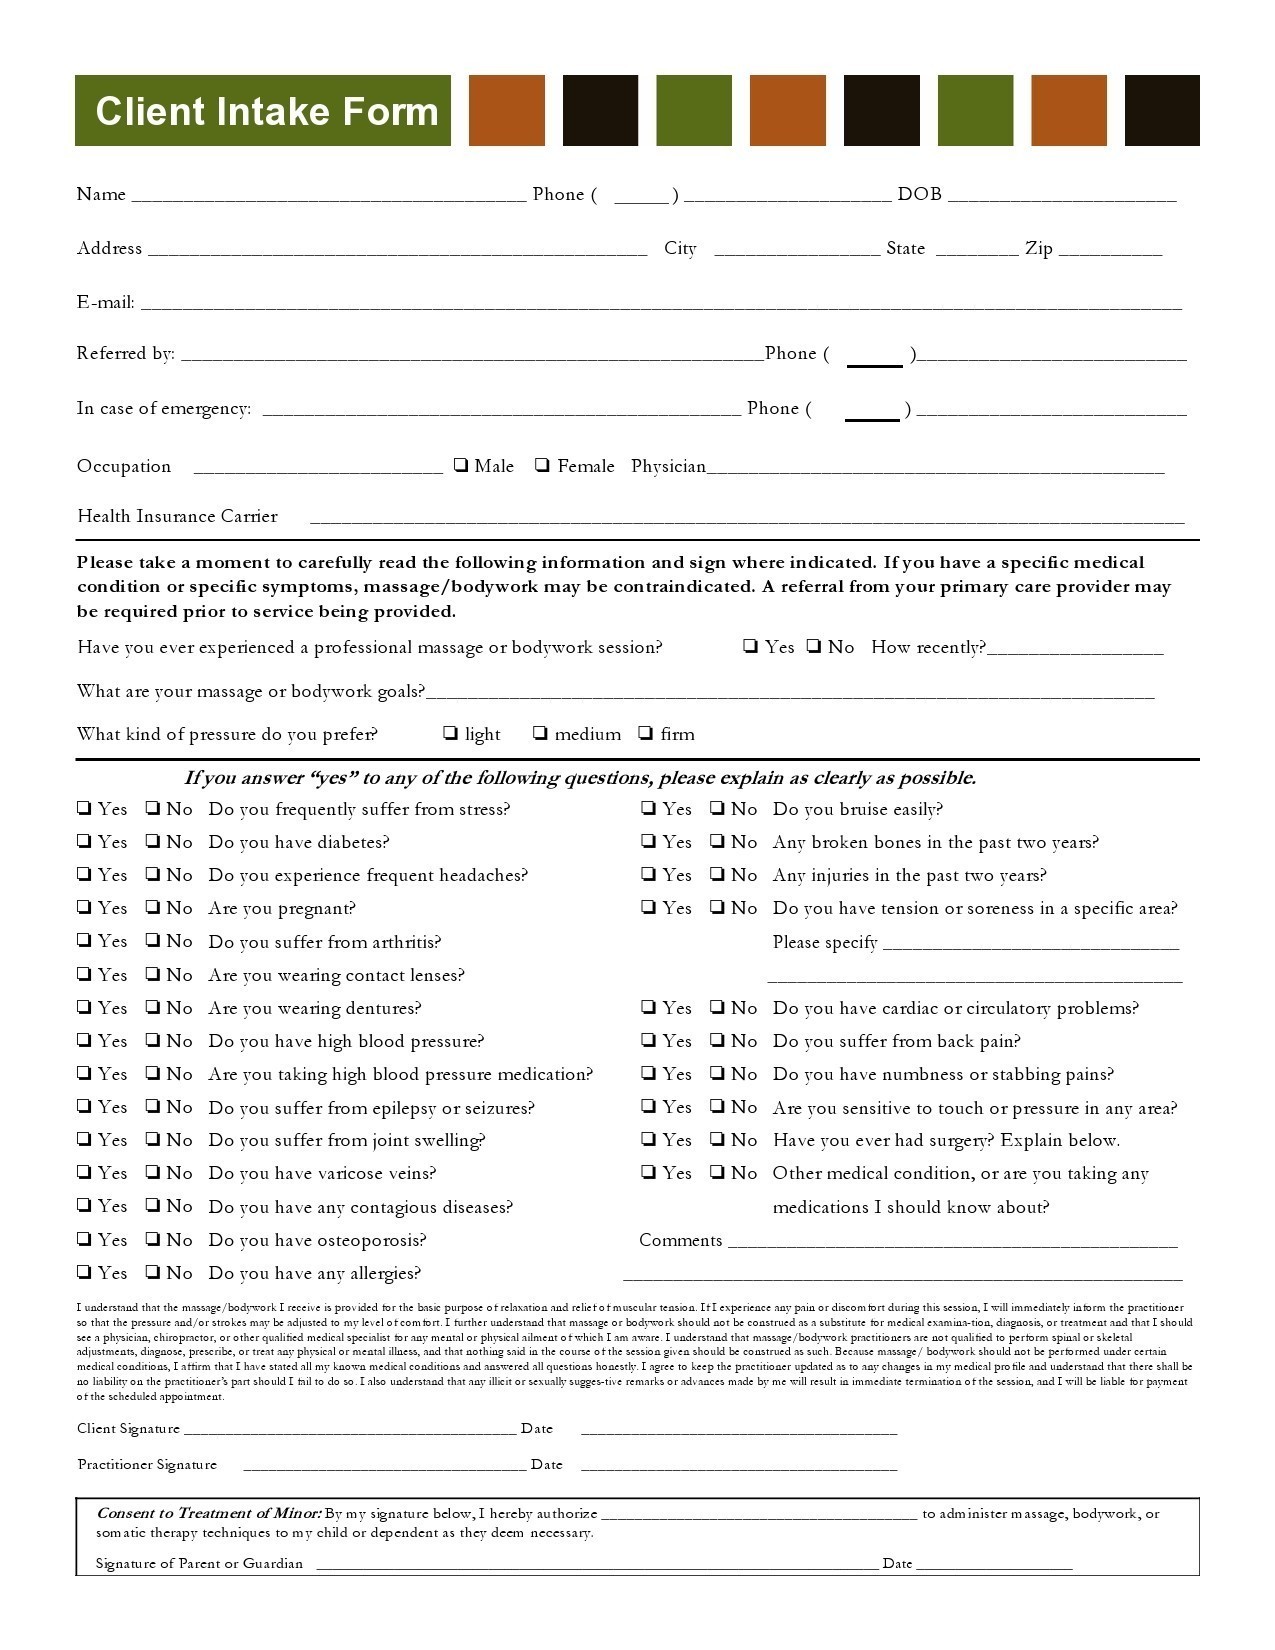 Formulario de admisión de clientes gratis 40